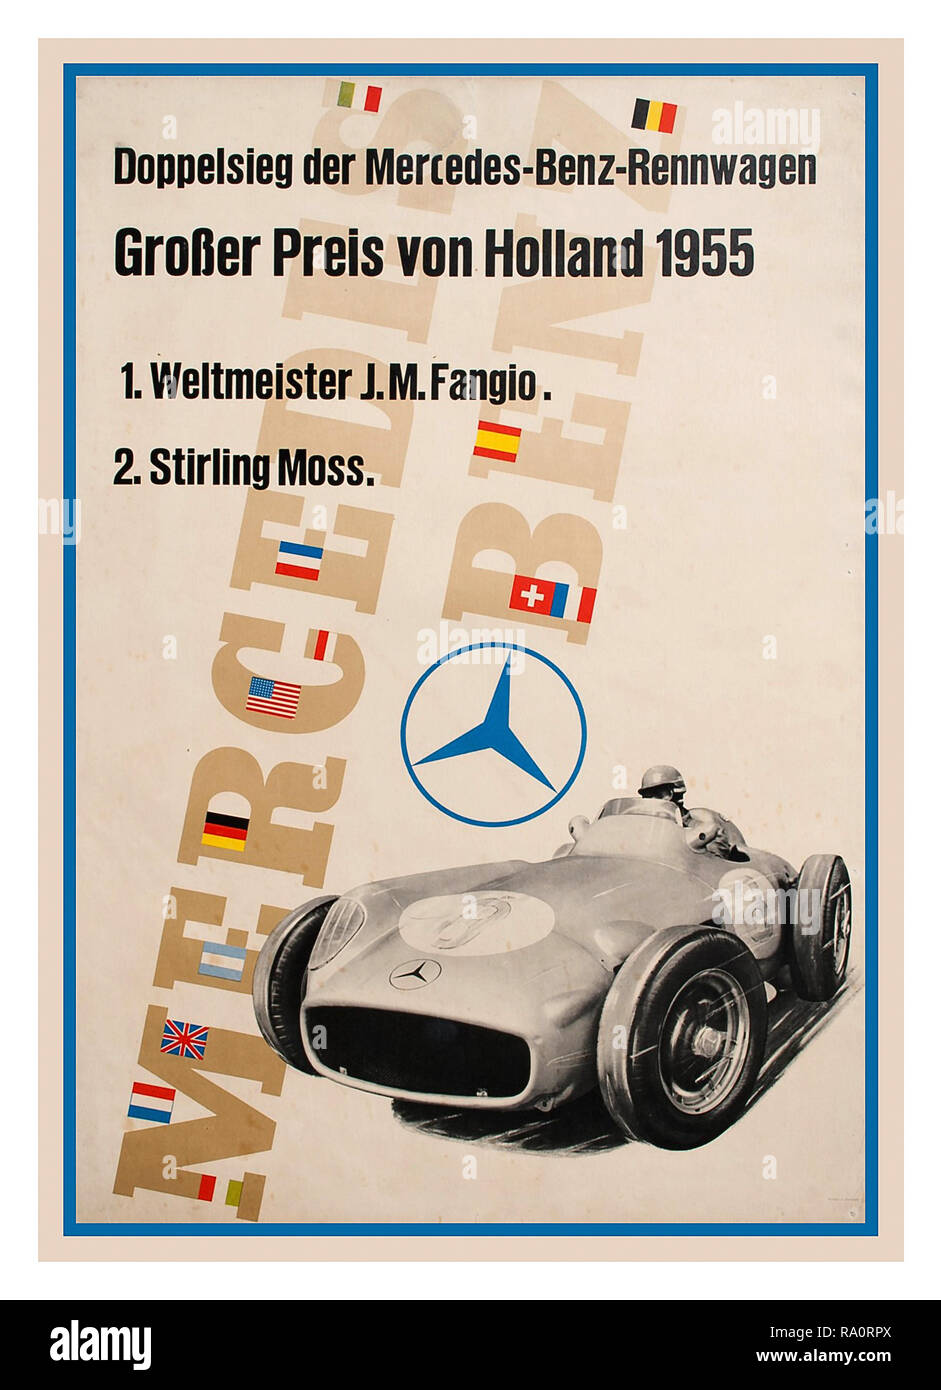 Grand Prix 1955 Vintage Poster Holland Grand Prix Motor Racing Competition Mercedes Benz victoire avec Juan Fangio première place Stirling Moss deuxième place 1955 'Grand résultat en Hollande' 'Double victoire avec Mercedes Racing car' Banque D'Images